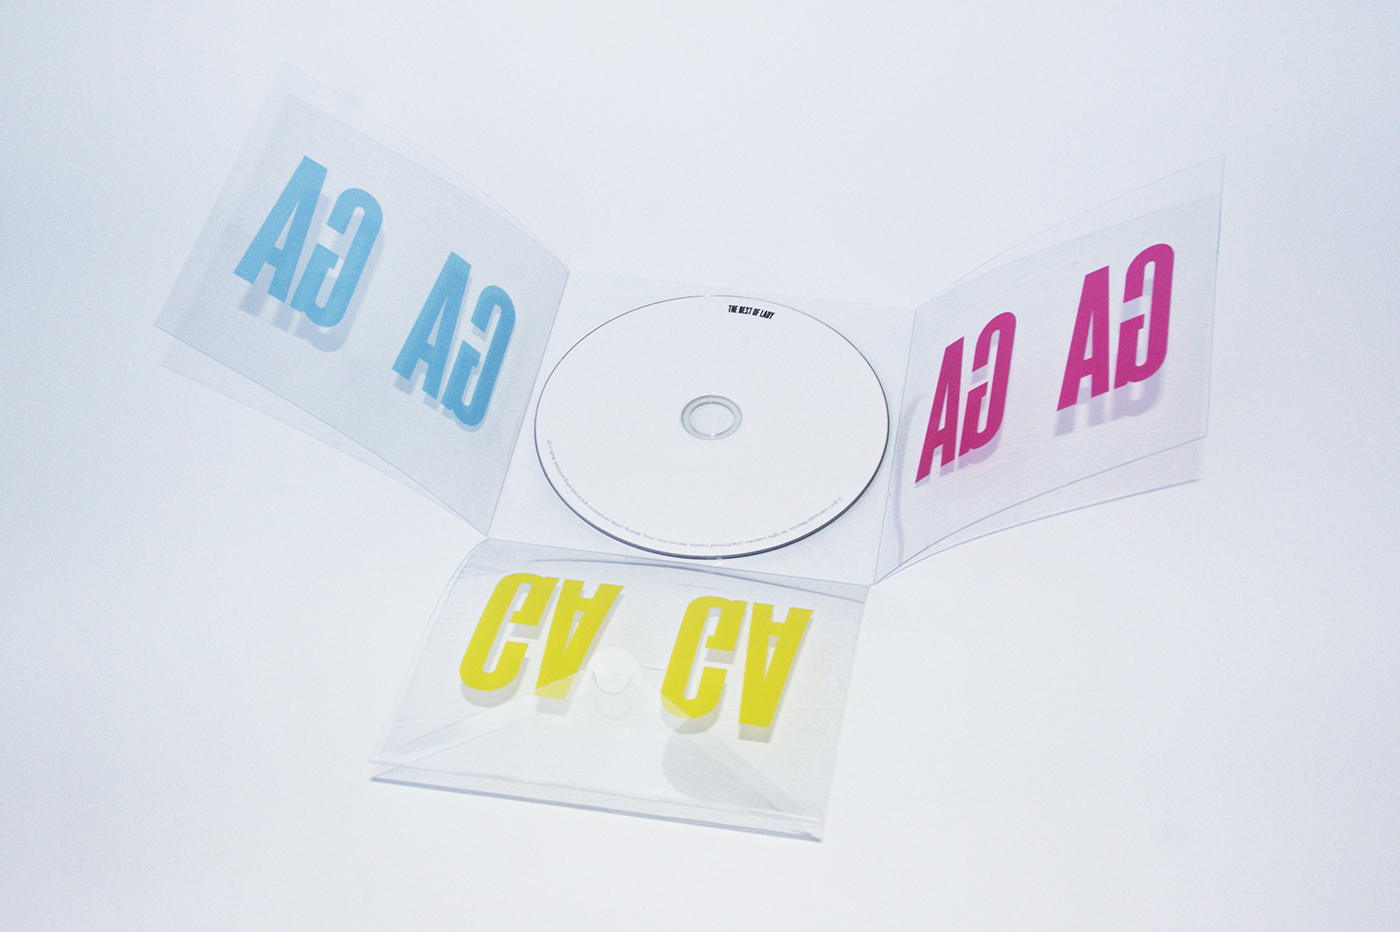 Lady Gaga album cover cd CD design cover design music Booklet